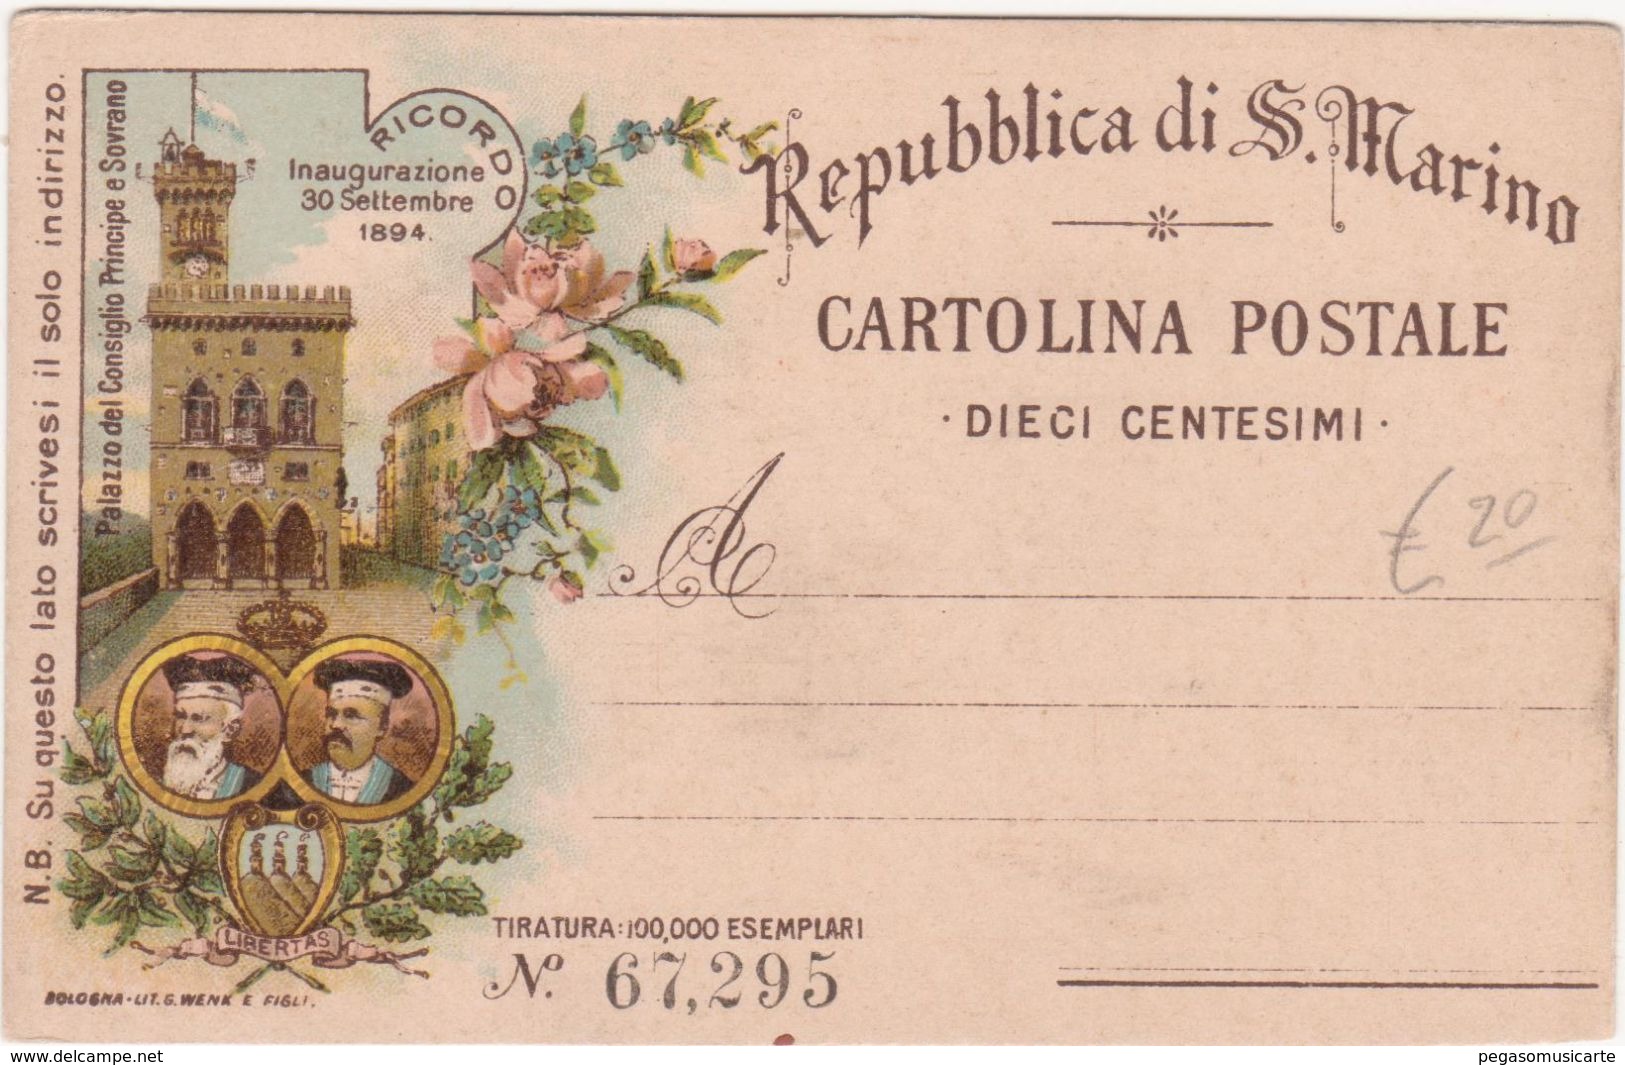 396 - REPUBBLICA DI S MARINO CARTOLINA POSTALE DIECI CENTESIMI RICORDO INAUGURAZIONE 1894 PALAZZO DEL CONSIGLIO - San Marino